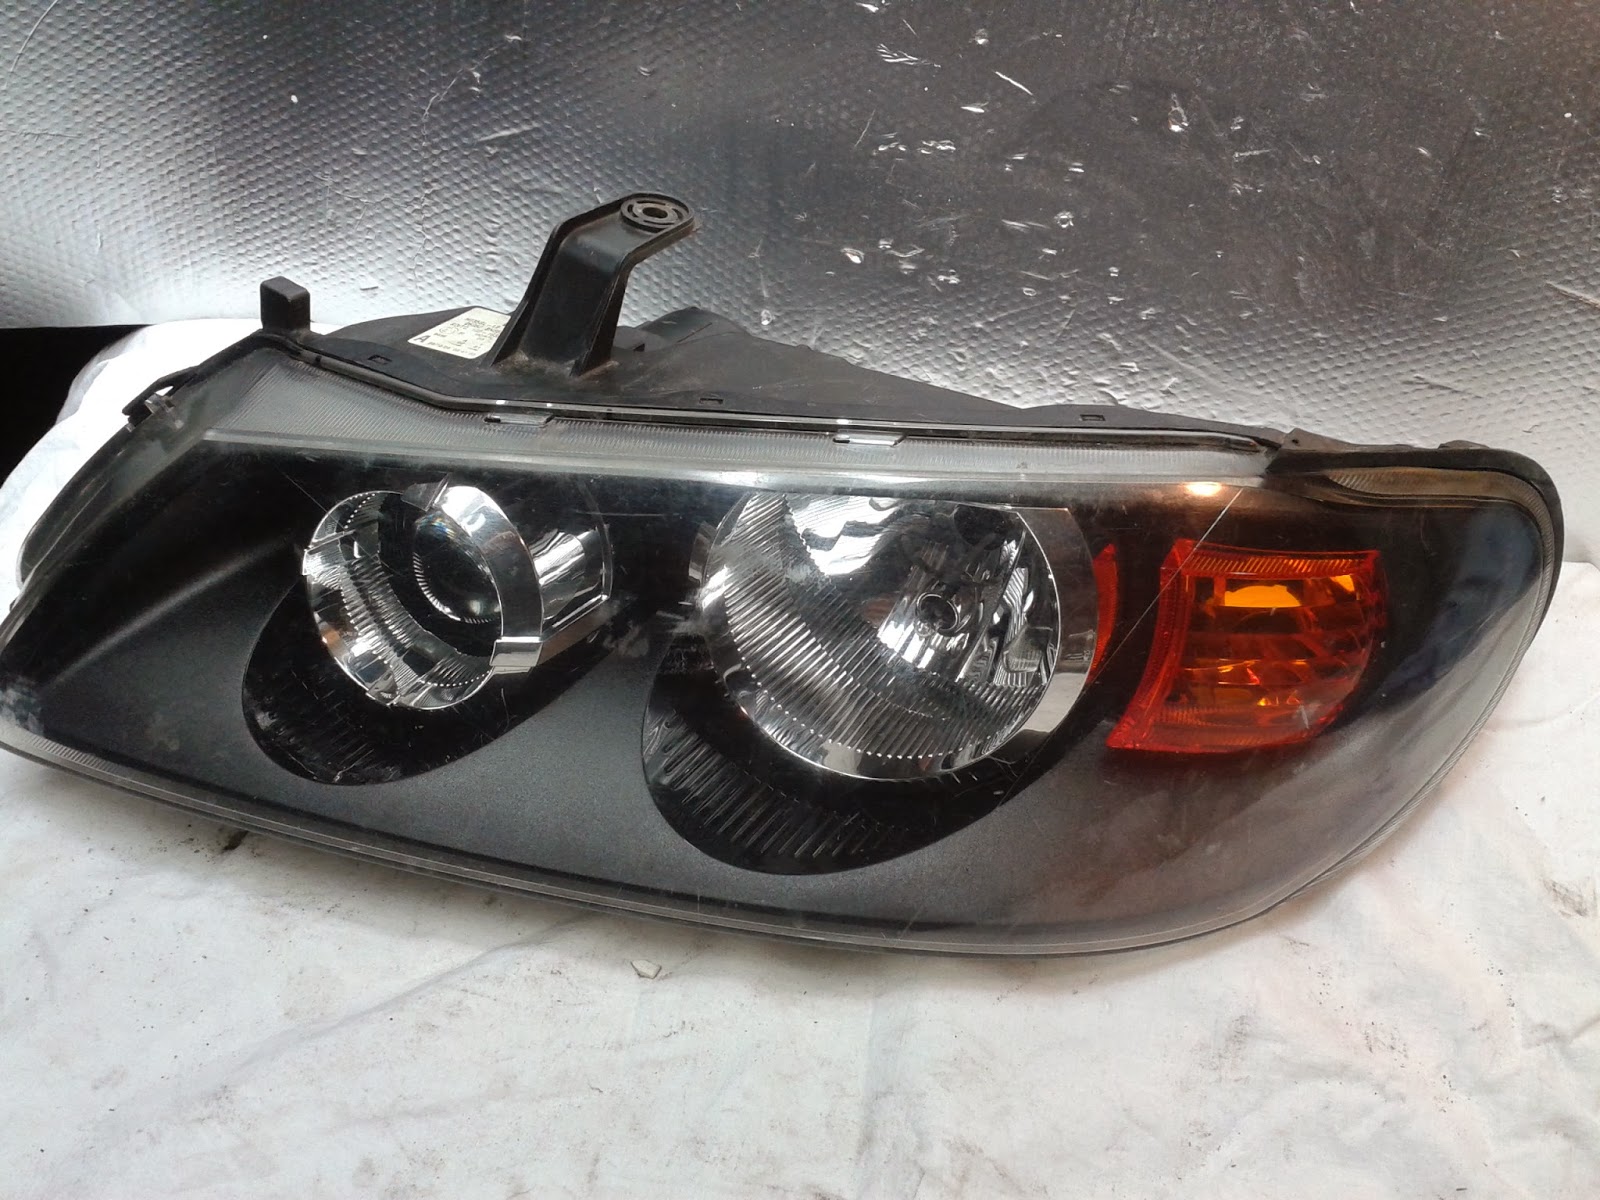 Reganeracja Reflektorów: Co Się Dzieje Z Lampami Nissan Almera N16